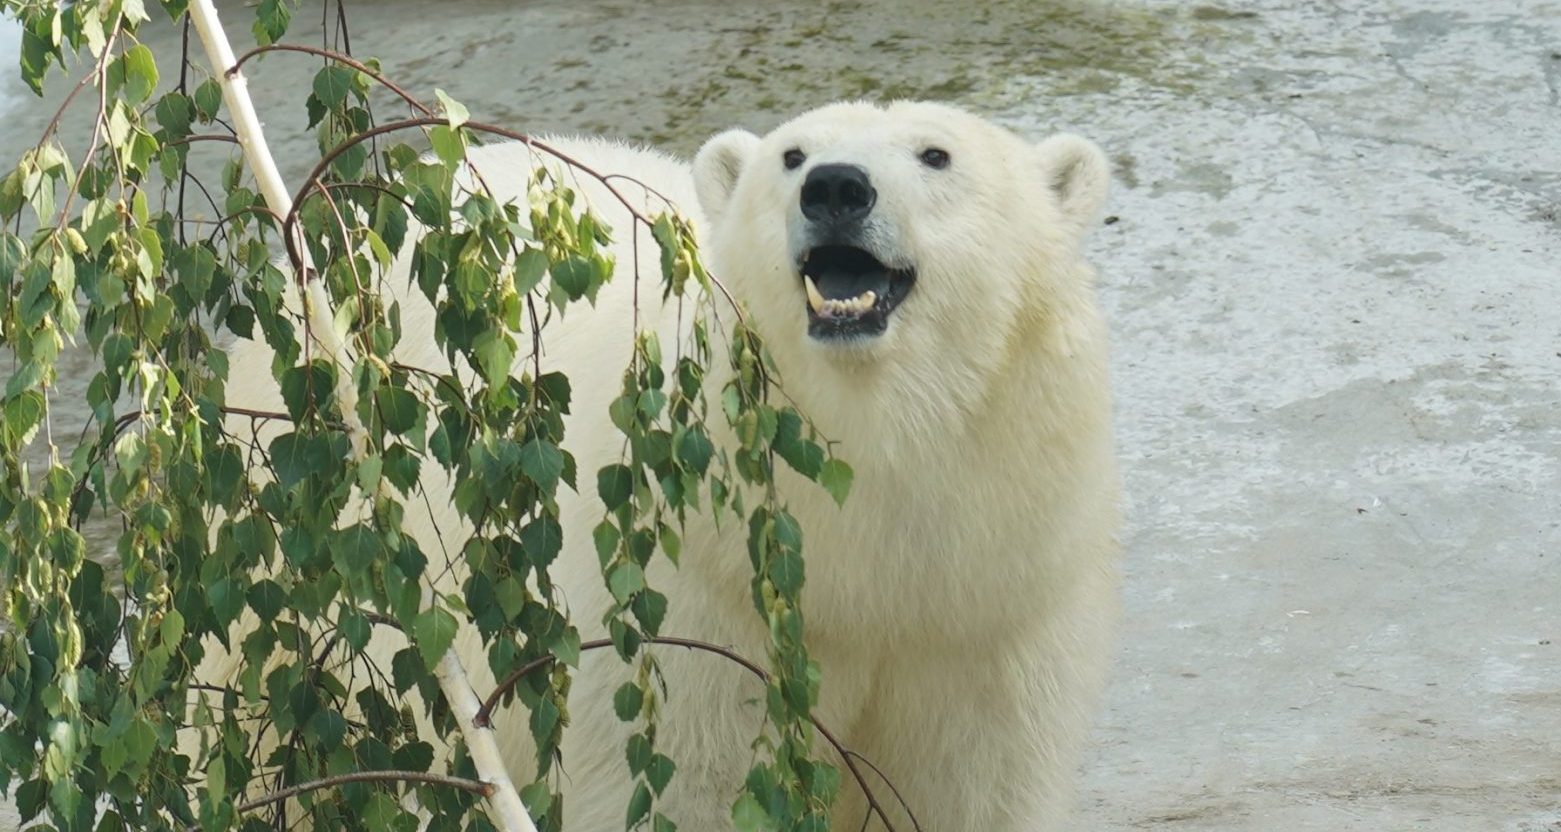 Имя для белой медведицы Московского зоопарка выберут на «Активном Гражданине». Фото предоставили в пресс-службе зоопарка